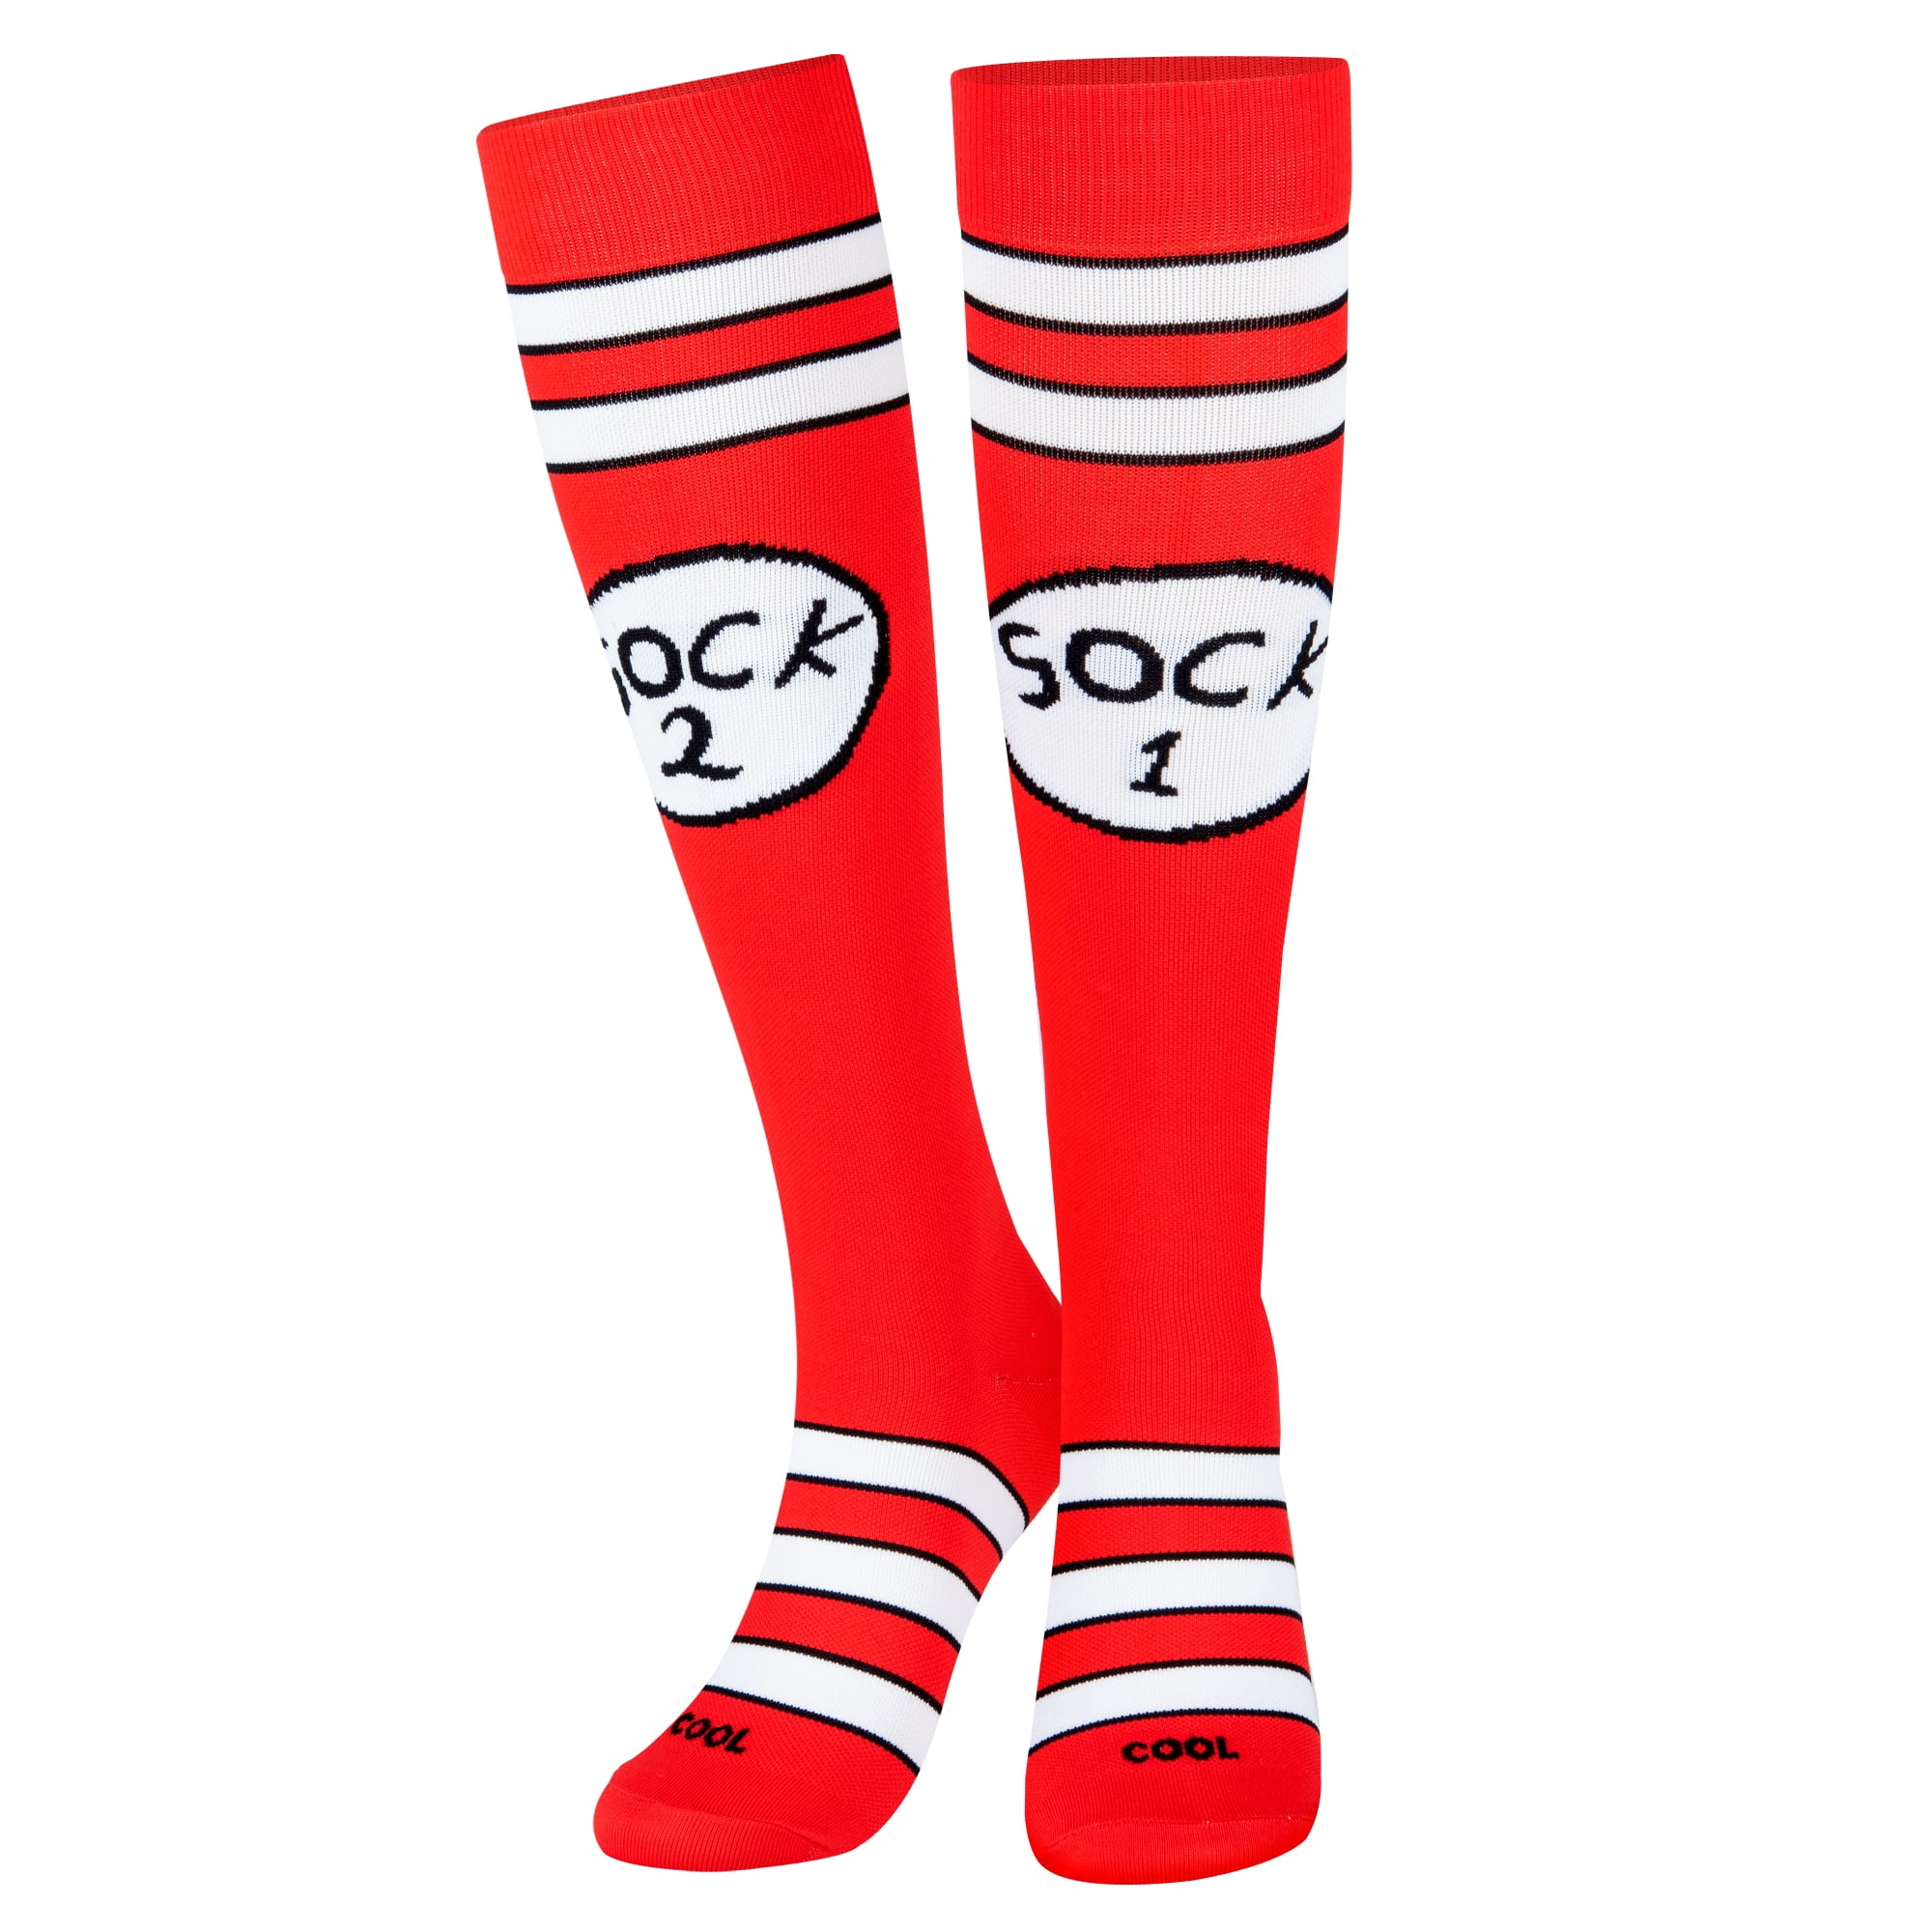 ouyjian Compression Socks Lets Avocuddle Unisex Full Socks Long Socks Knee High Socks Comfortable 1551